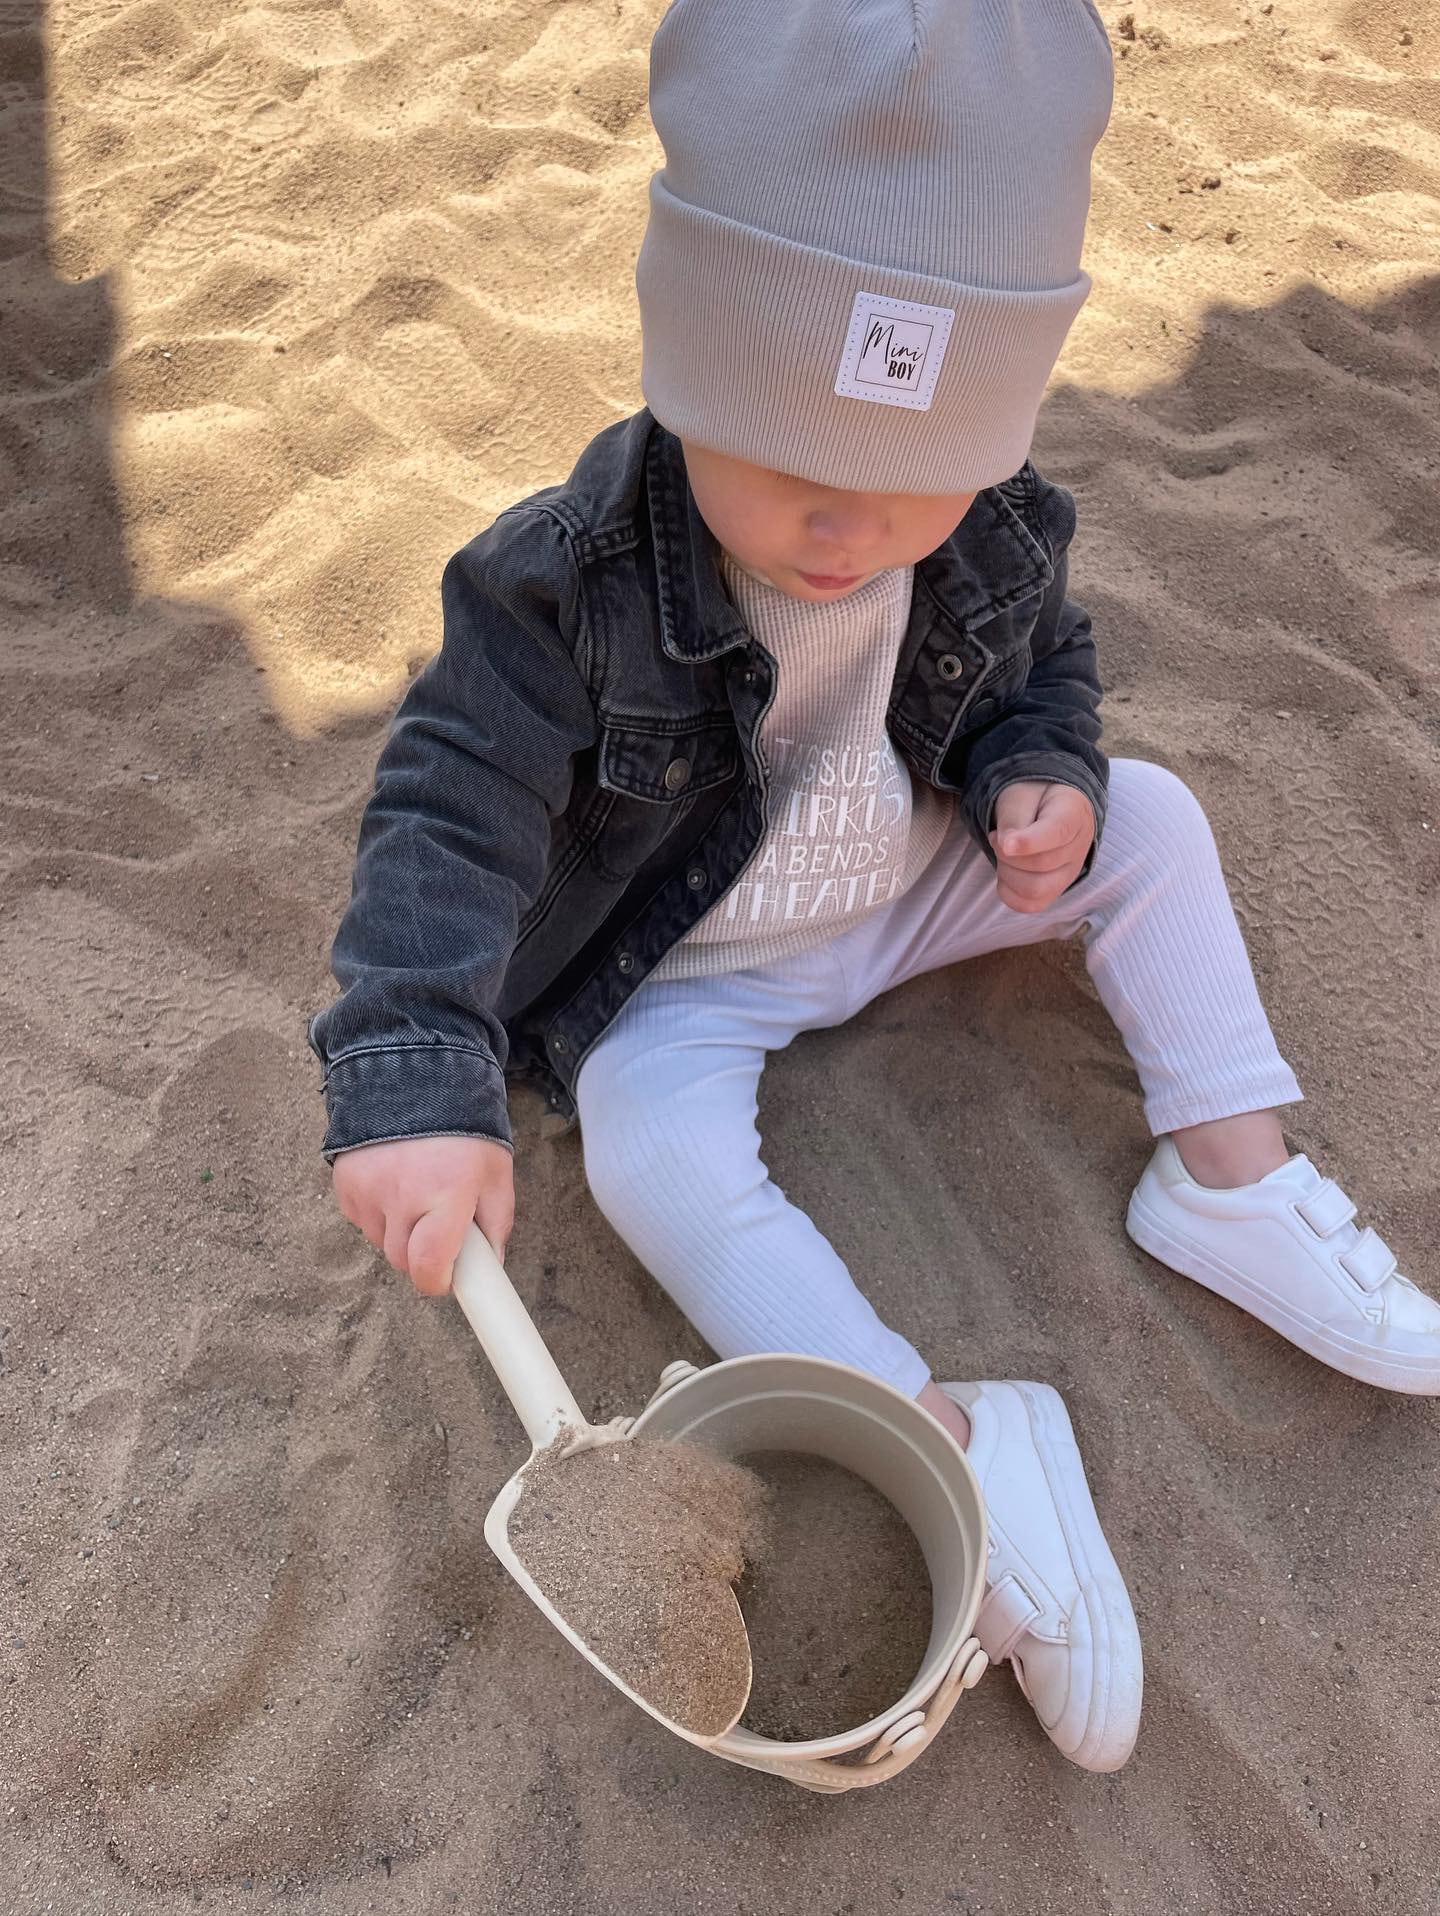 Kleiner Junge mit Beanie spielt im Sandkasten